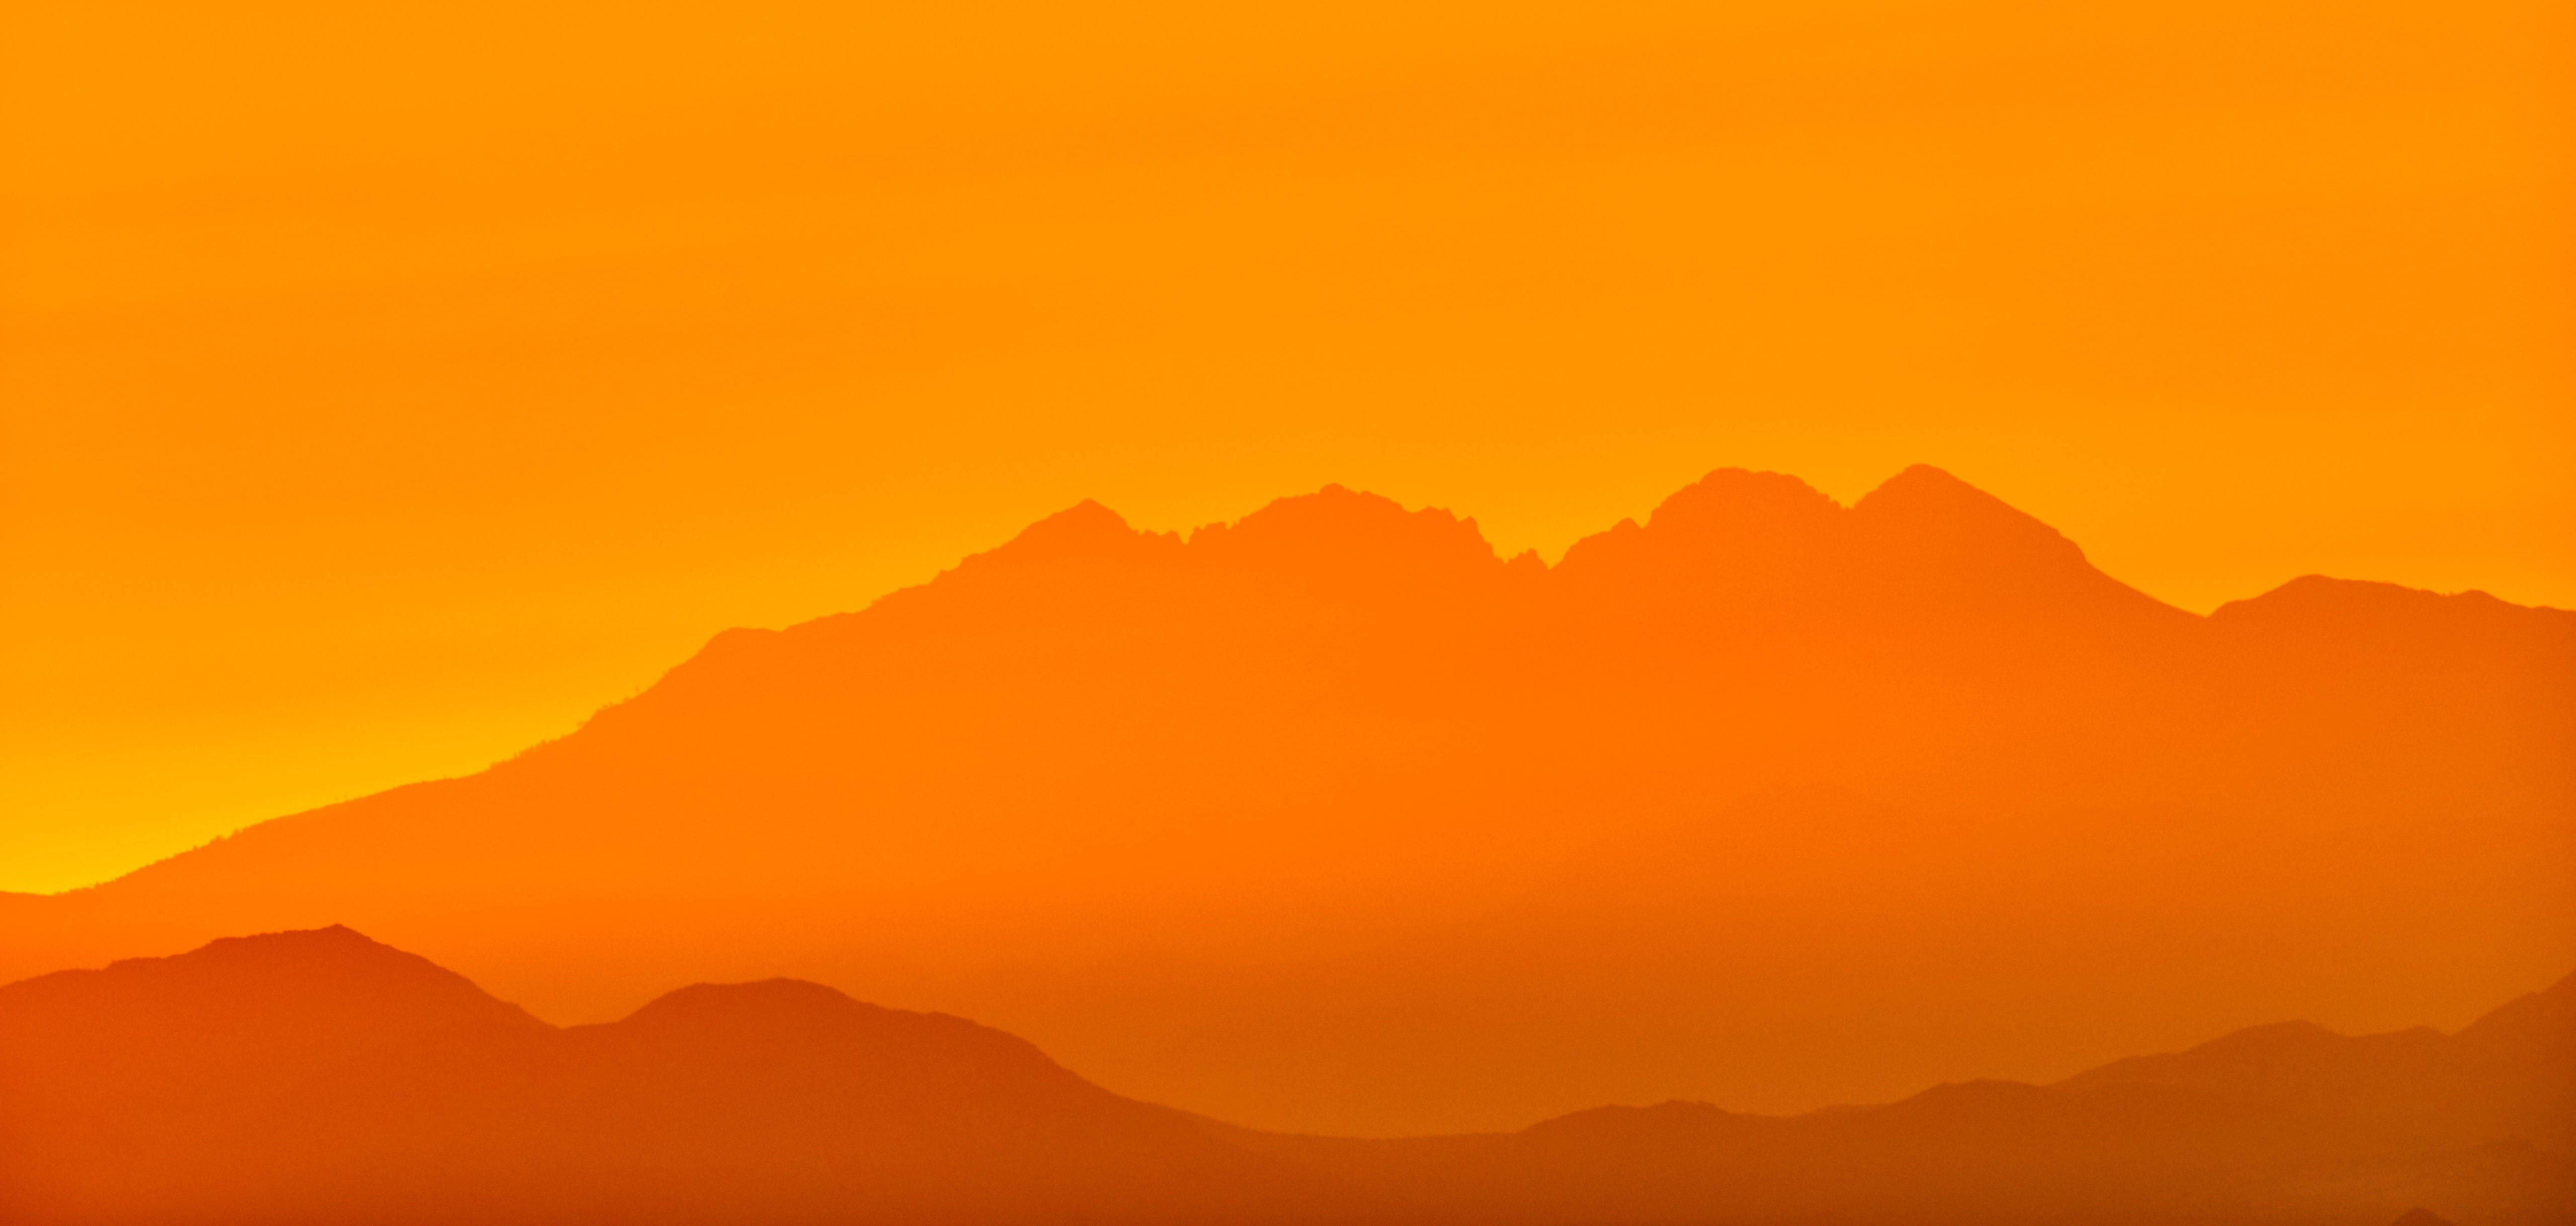 High Definition Orange background